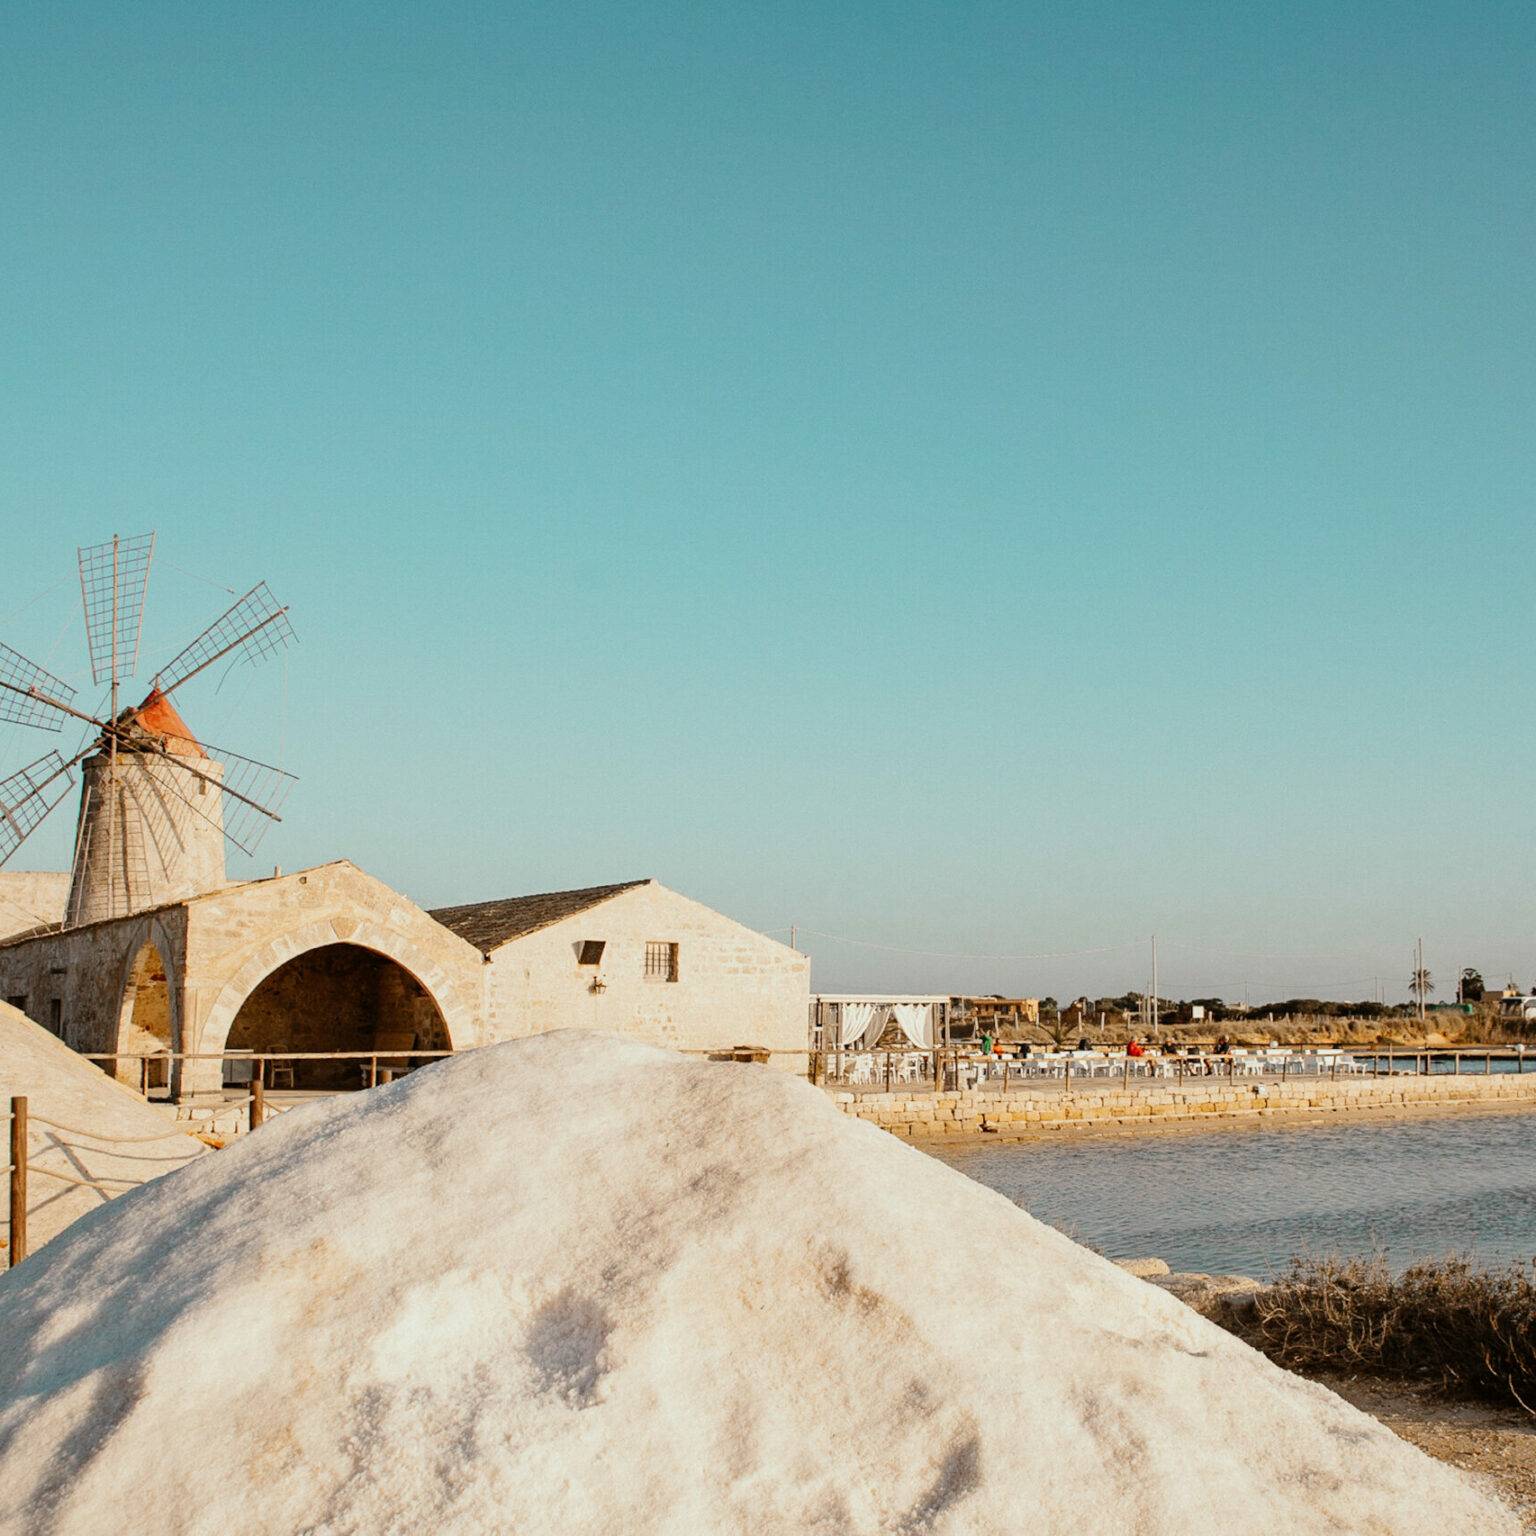 Die Salzgärten von Trapani, in der Mitte steht eine kleine Windmühle.